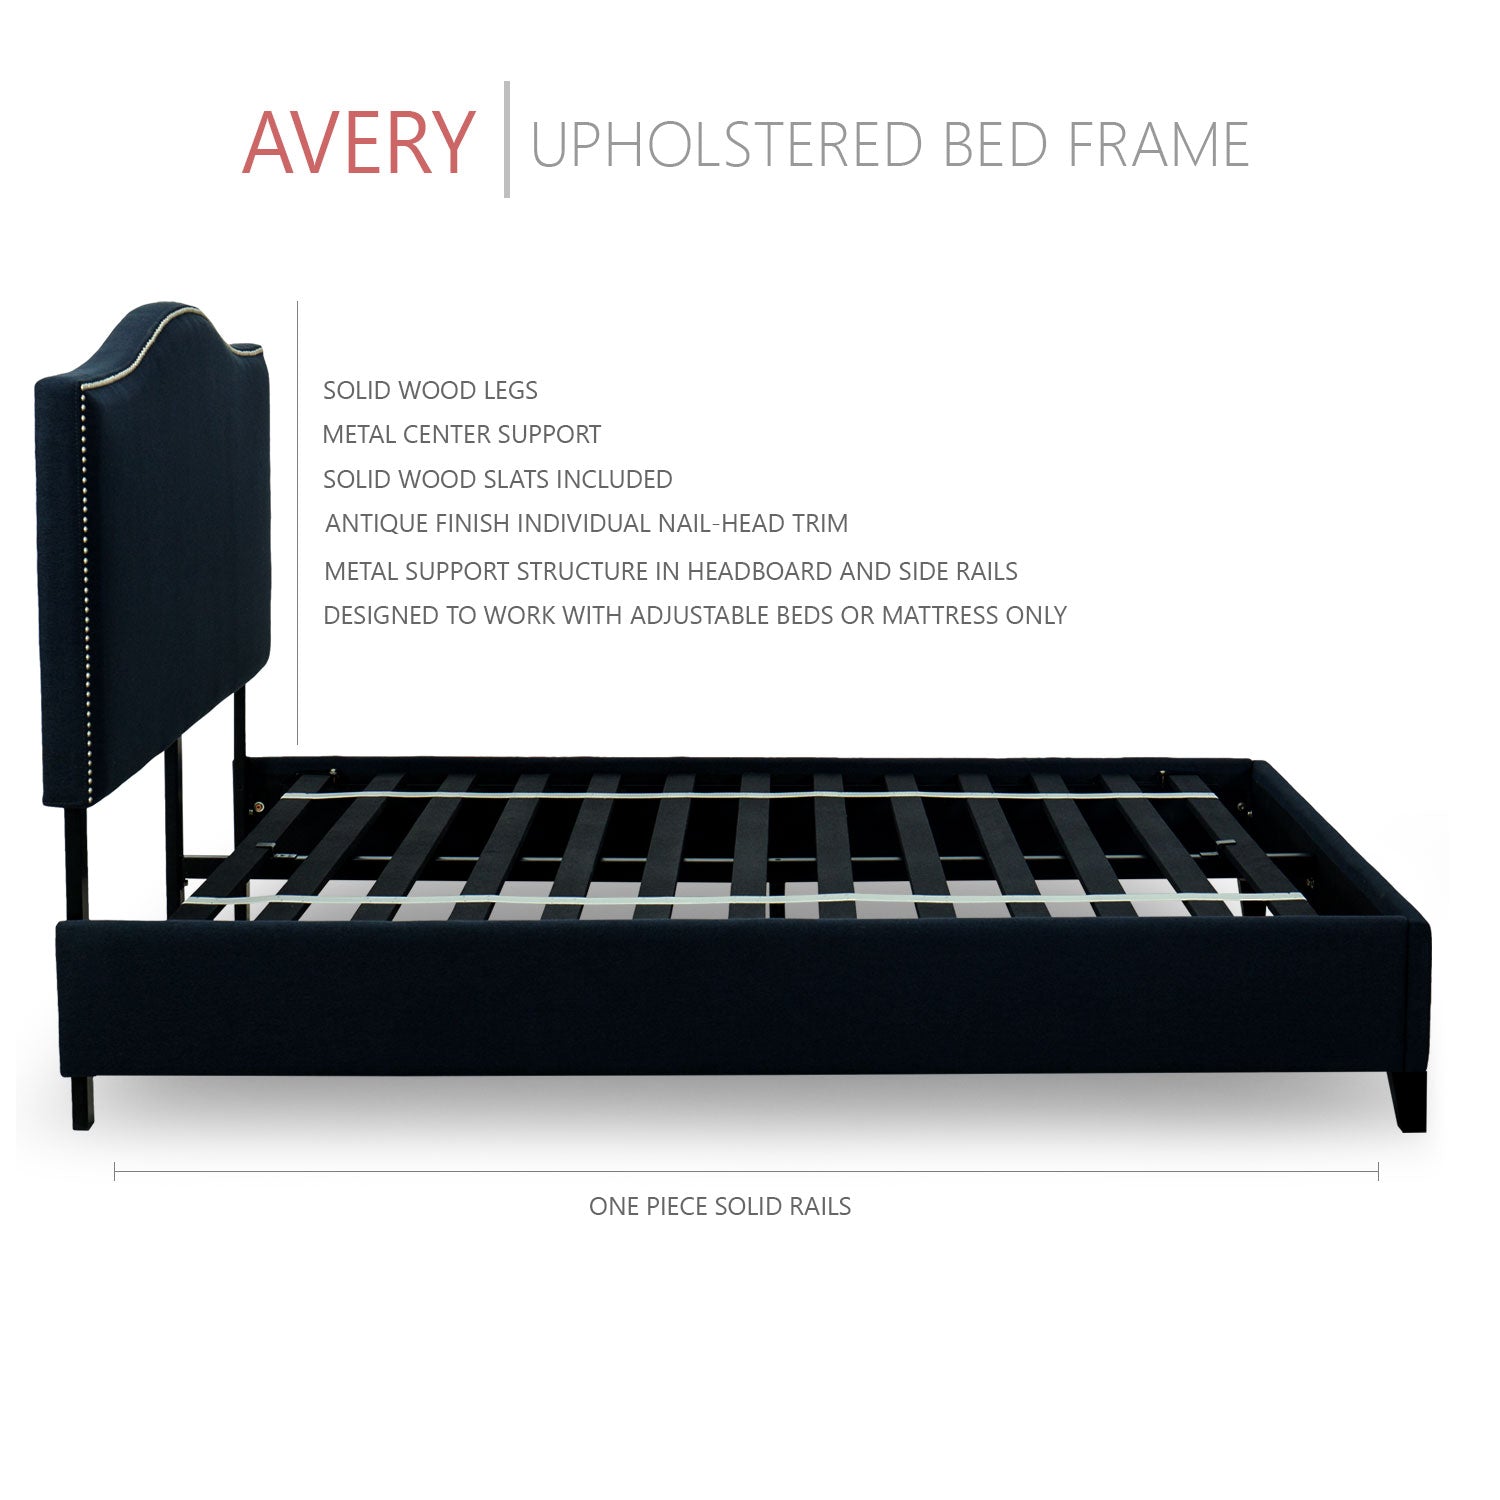 Avery Upholstered Platform Bed, 50" Tall Headboard - Midnight Blue Denim - BlissfulNights.com